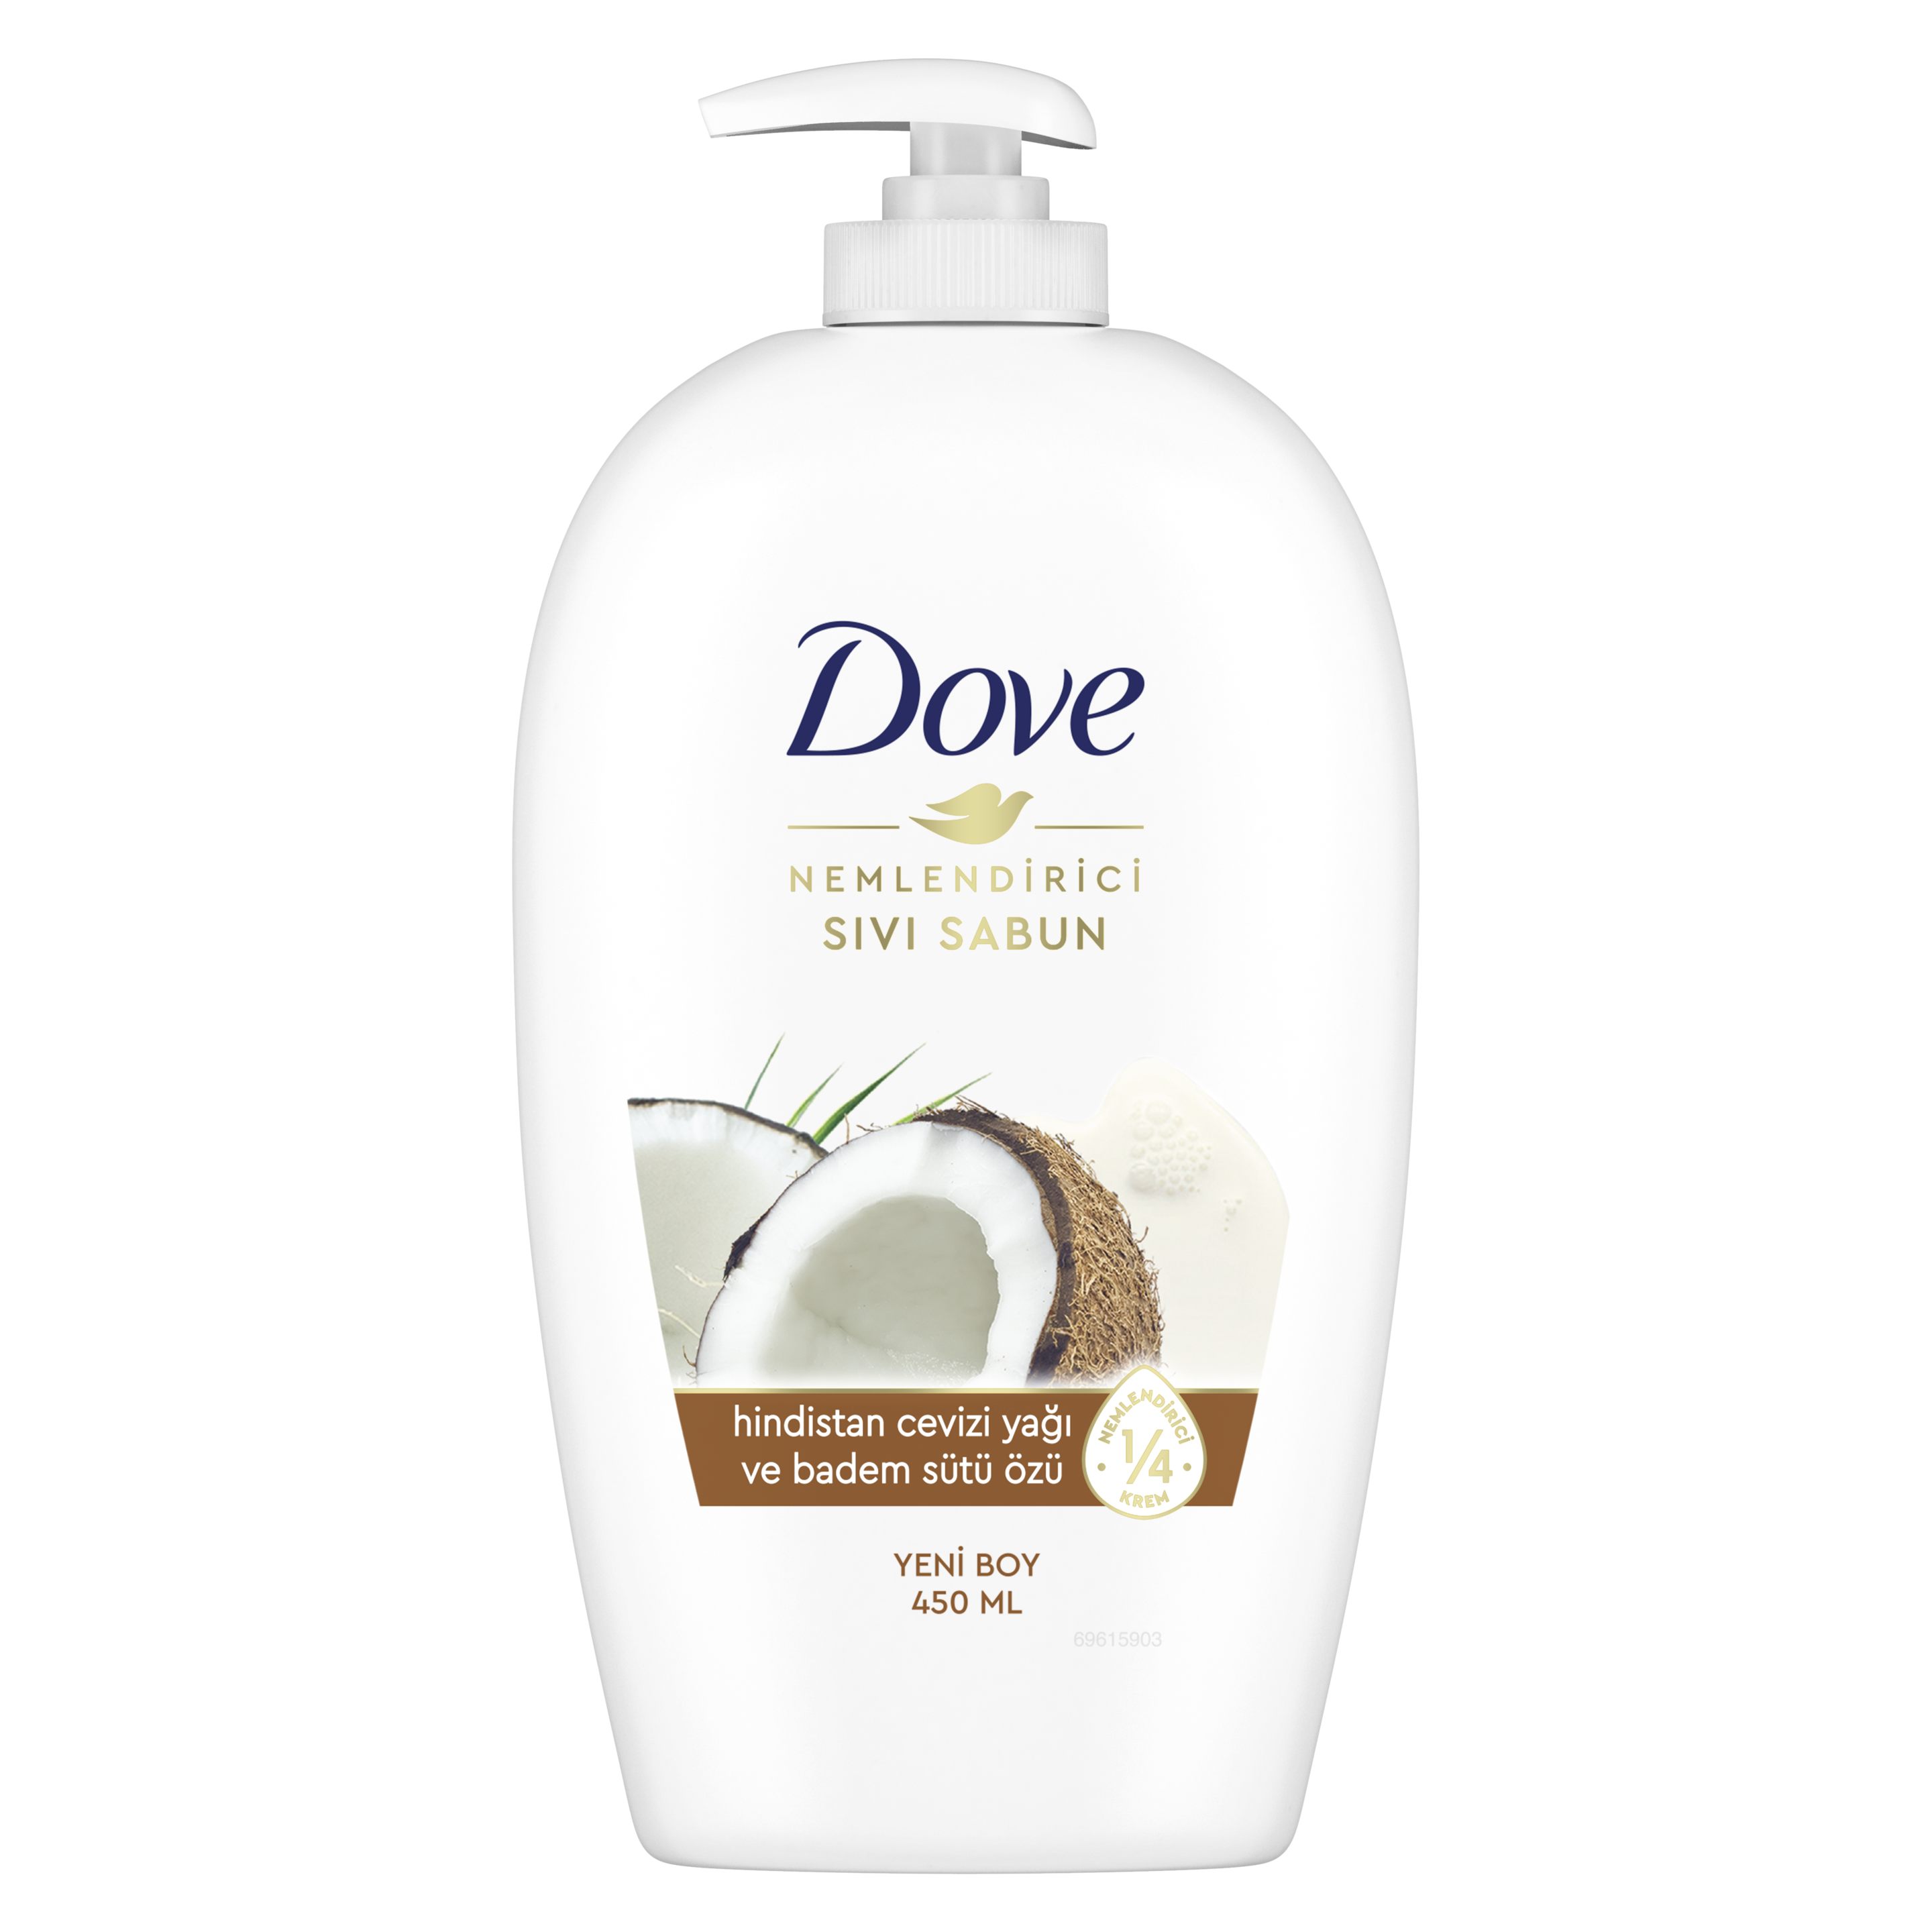 Dove Hindistan Cevizi Yağı ve Badem Sütü Özü Nemlendirici Sıvı Sabun 450 ml